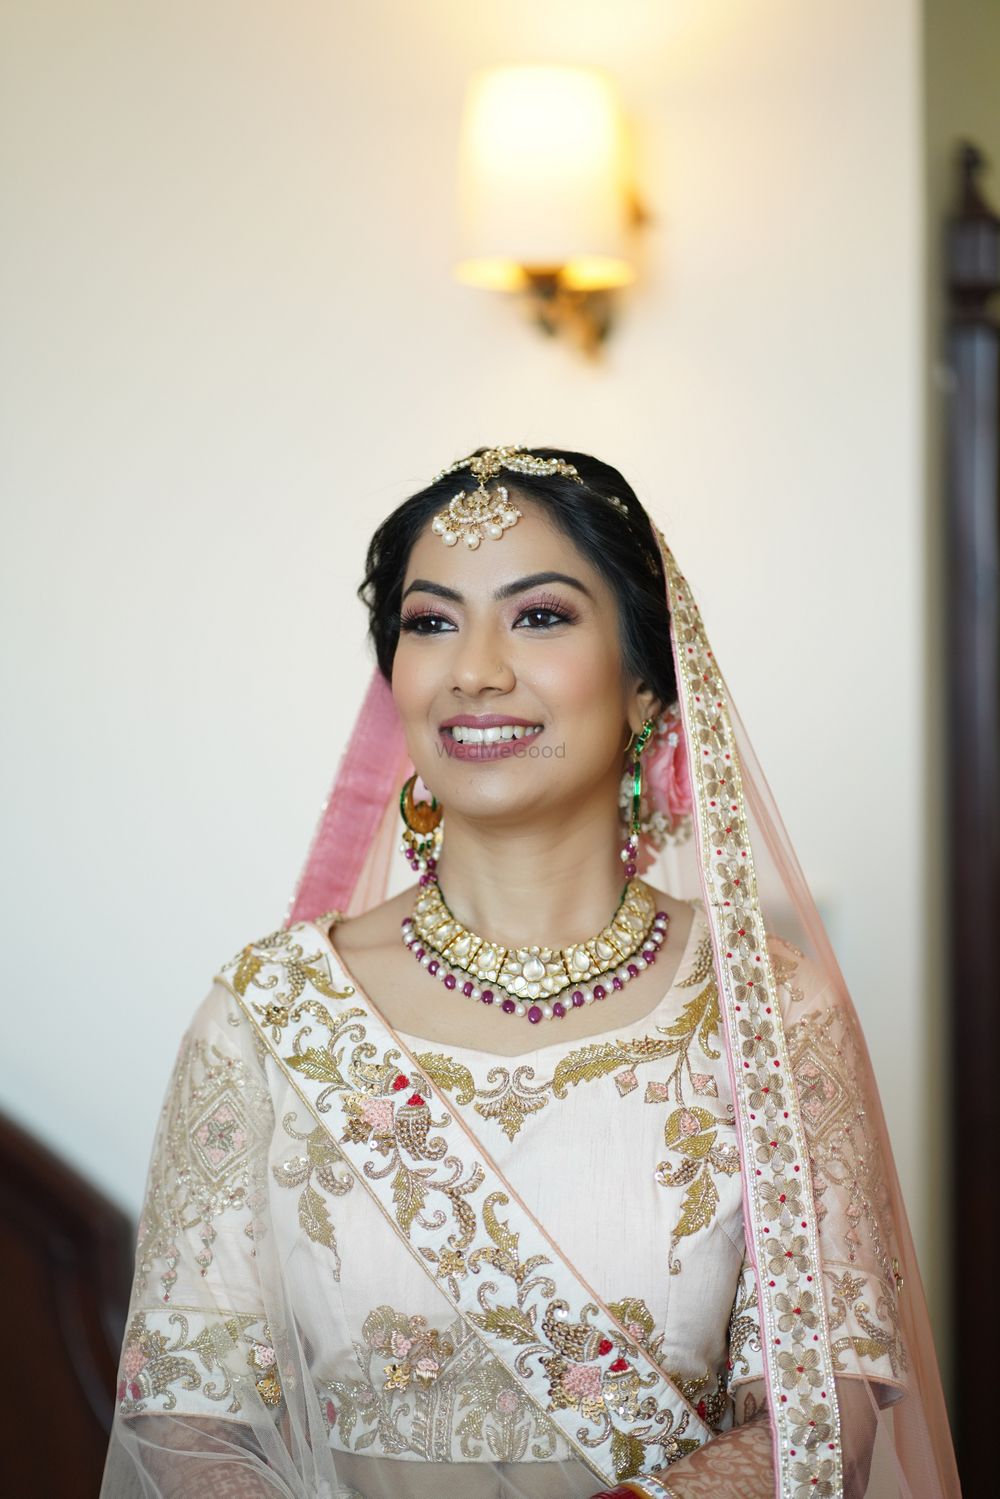 Photo From Brides - By Sahima handa